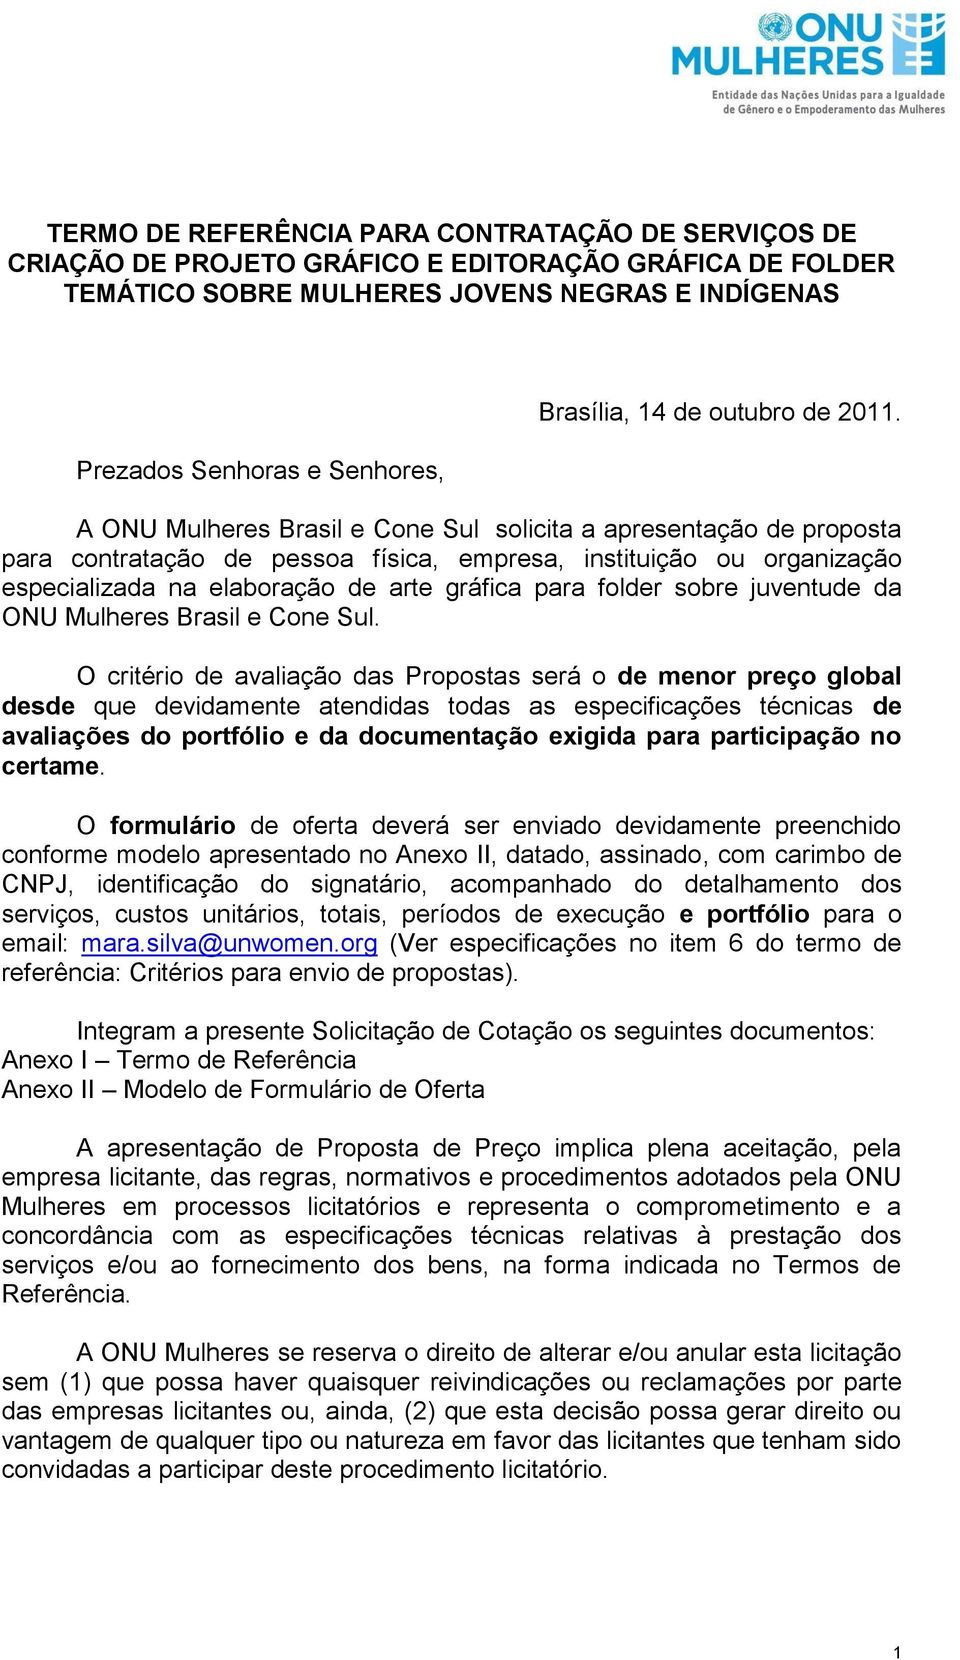 A ONU Mulheres Brasil e Cone Sul solicita a apresentação de proposta para contratação de pessoa física, empresa, instituição ou organização especializada na elaboração de arte gráfica para folder